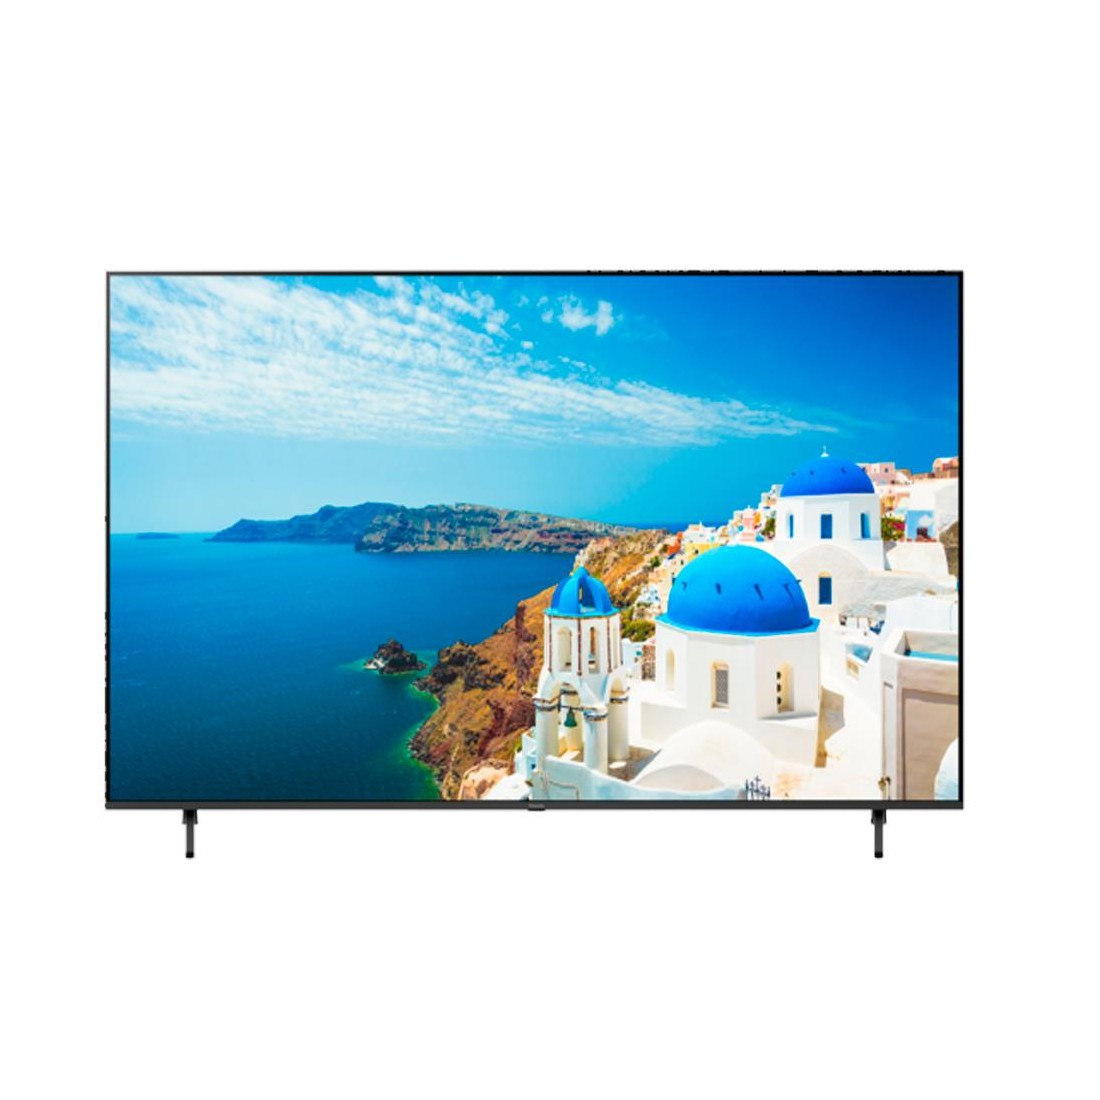 TV HAIER 65' (pulgadas) 4K UHD, Smart tv con buena resolución y bajo precio  